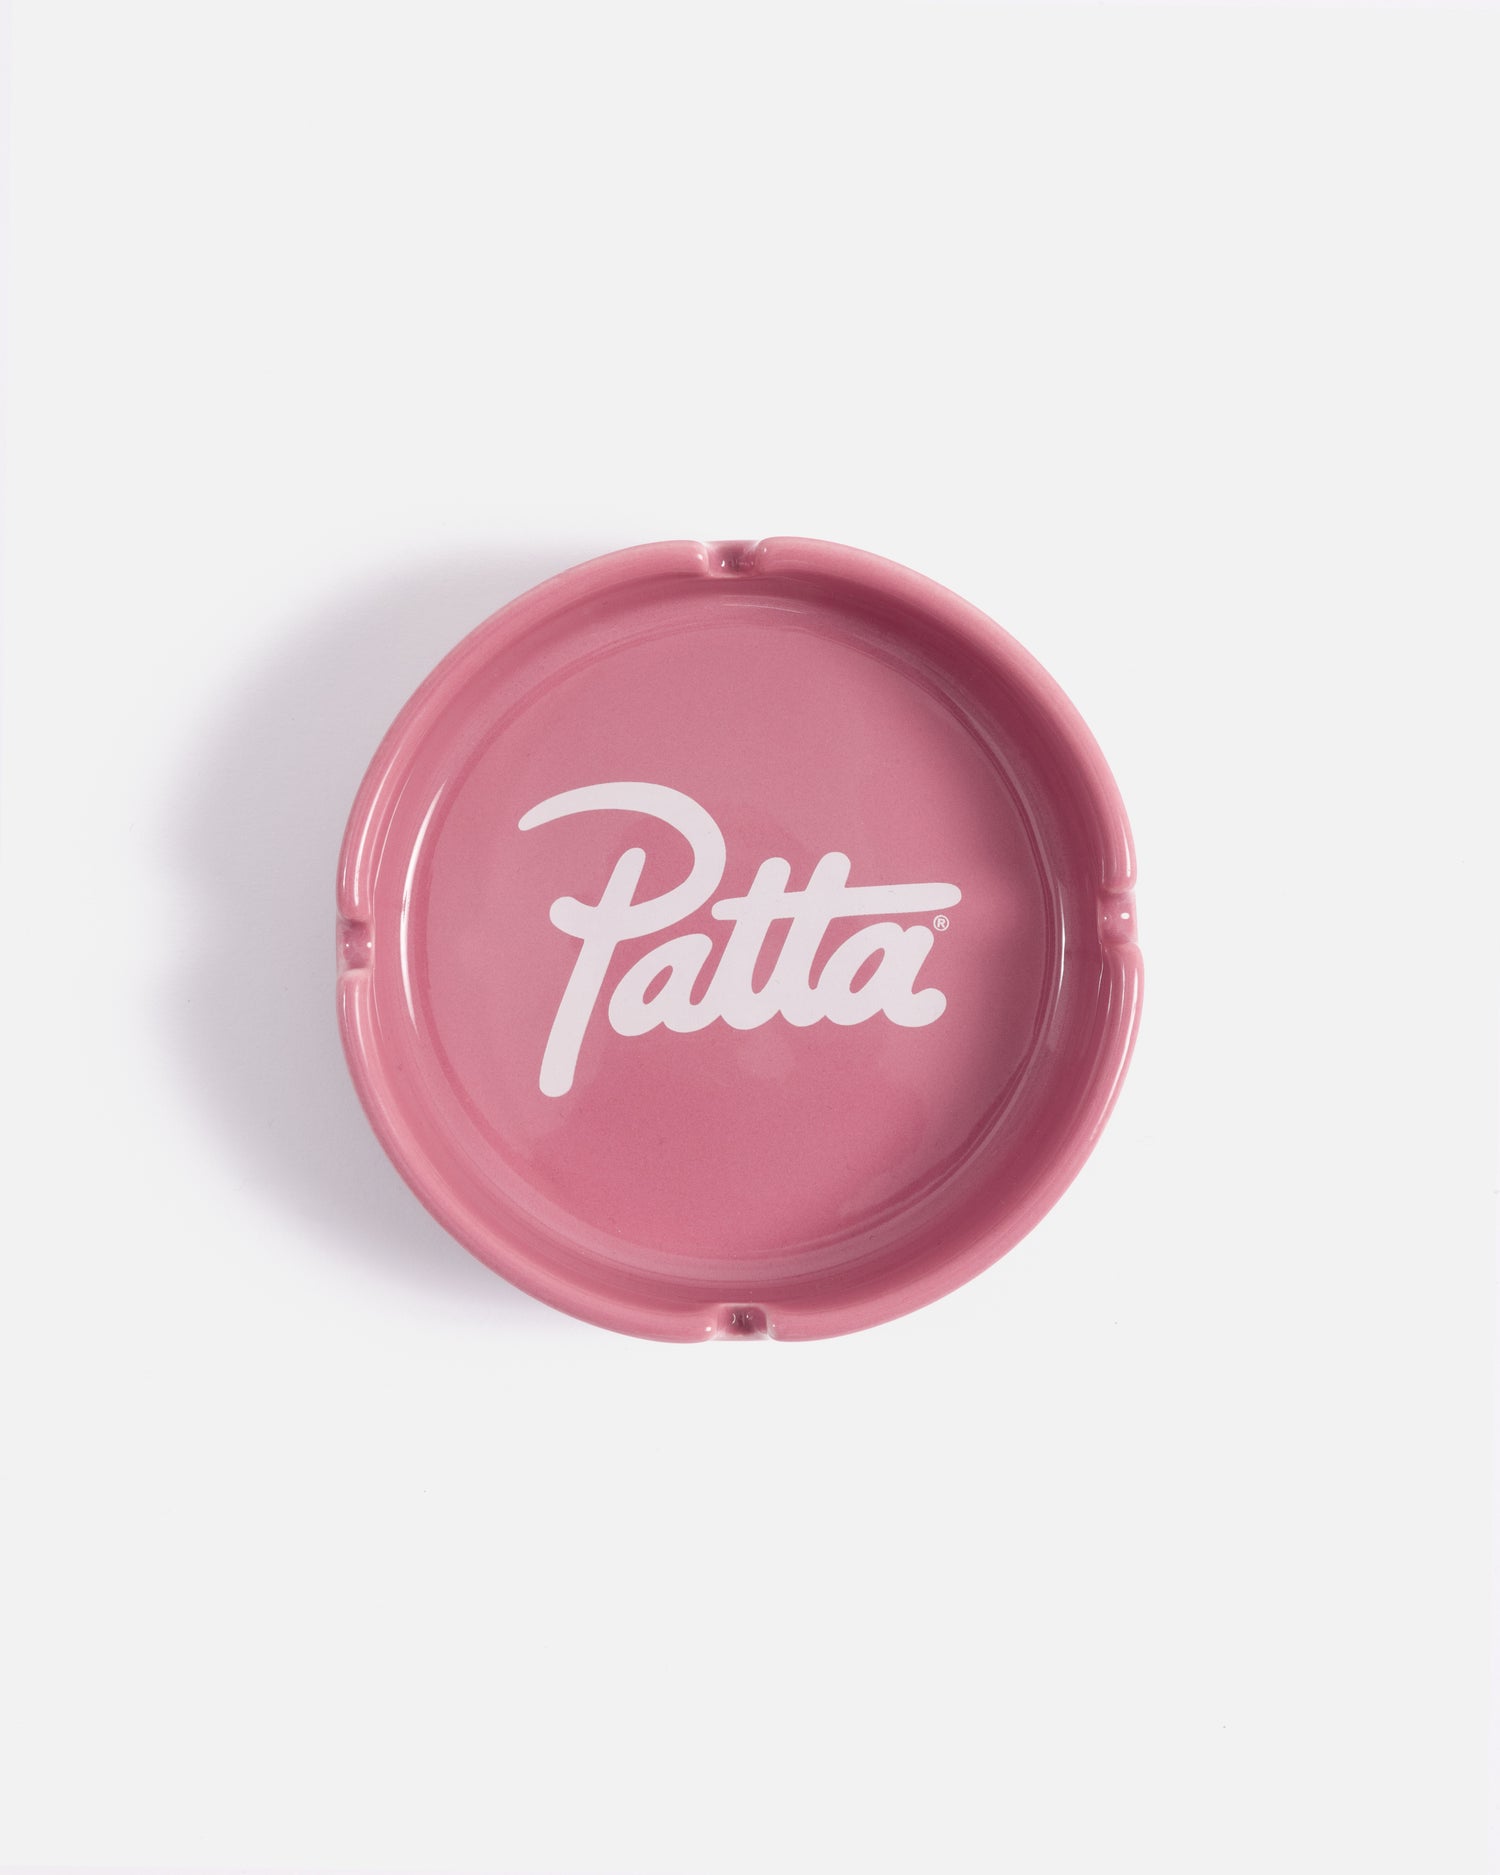 Patta Script Logo Ashtray (Pink/White)